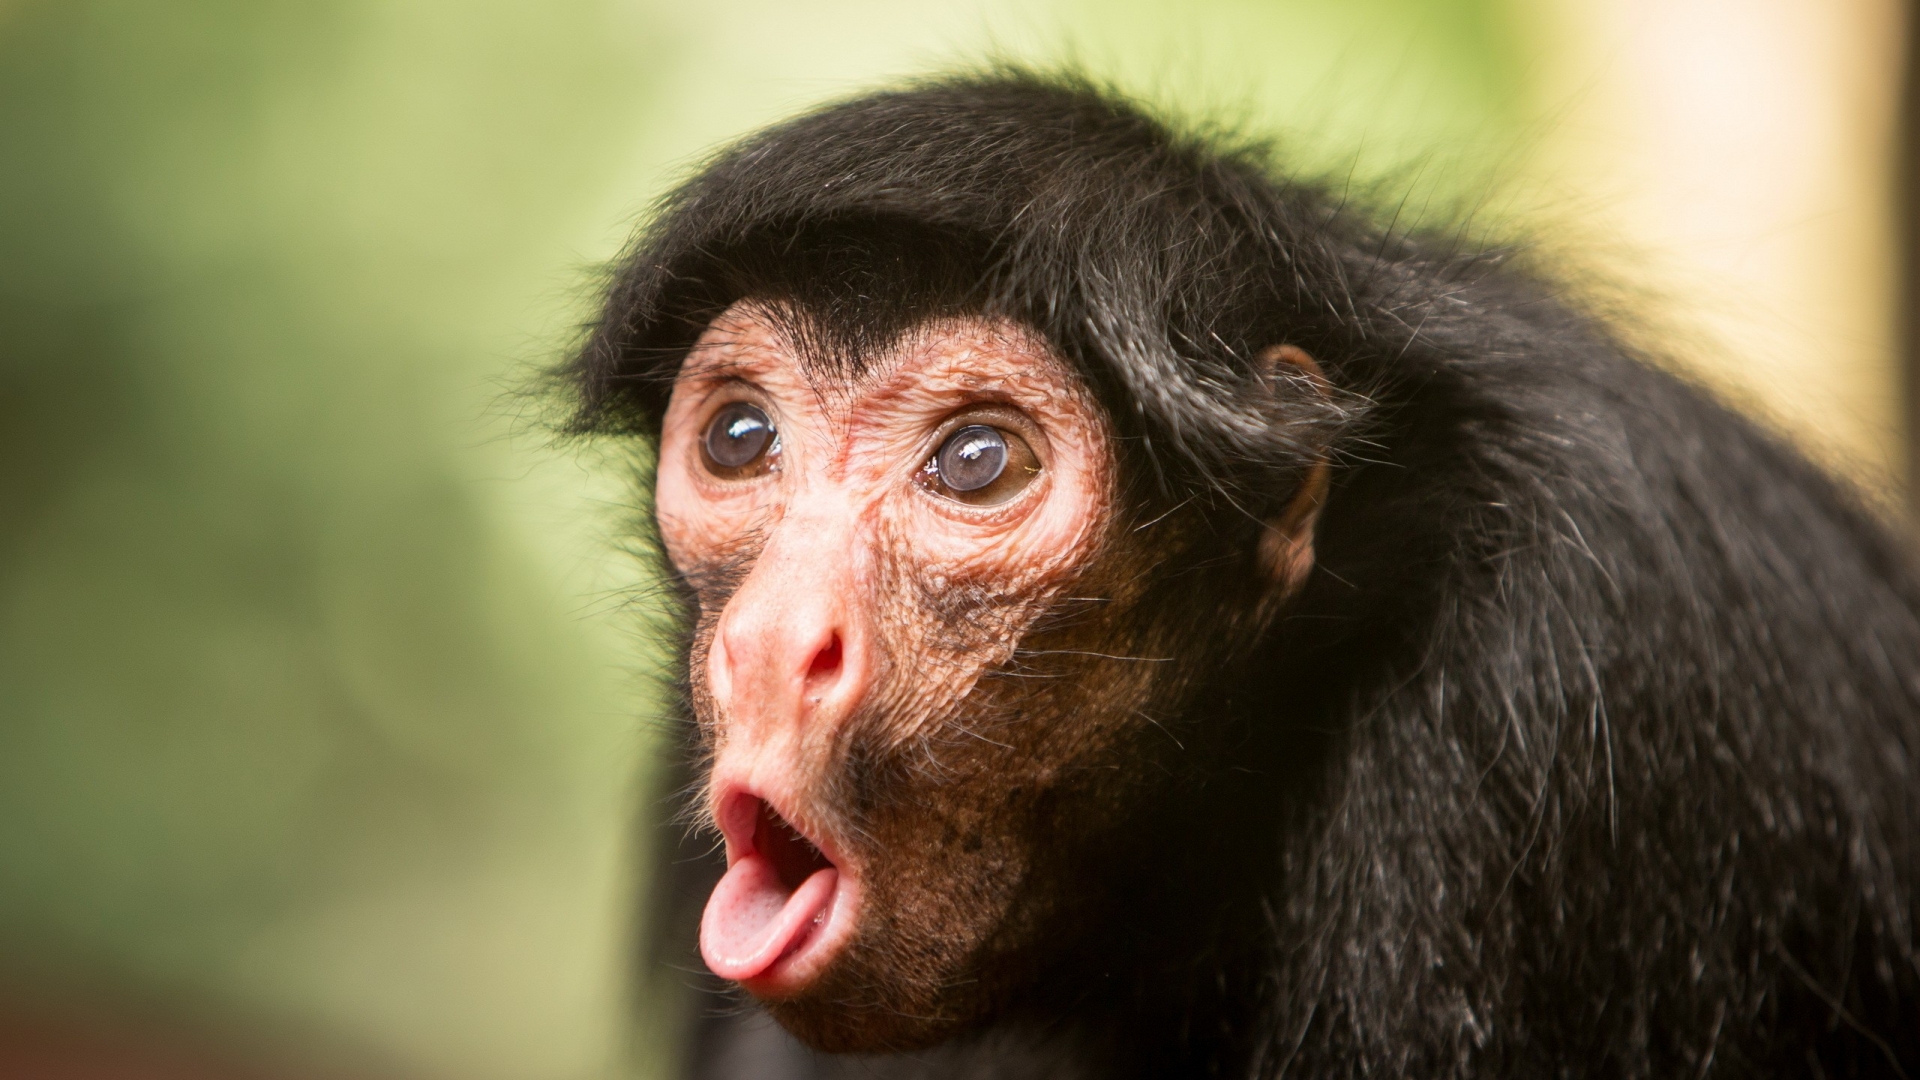 Funny Monkey Face - HD Wallpaper 